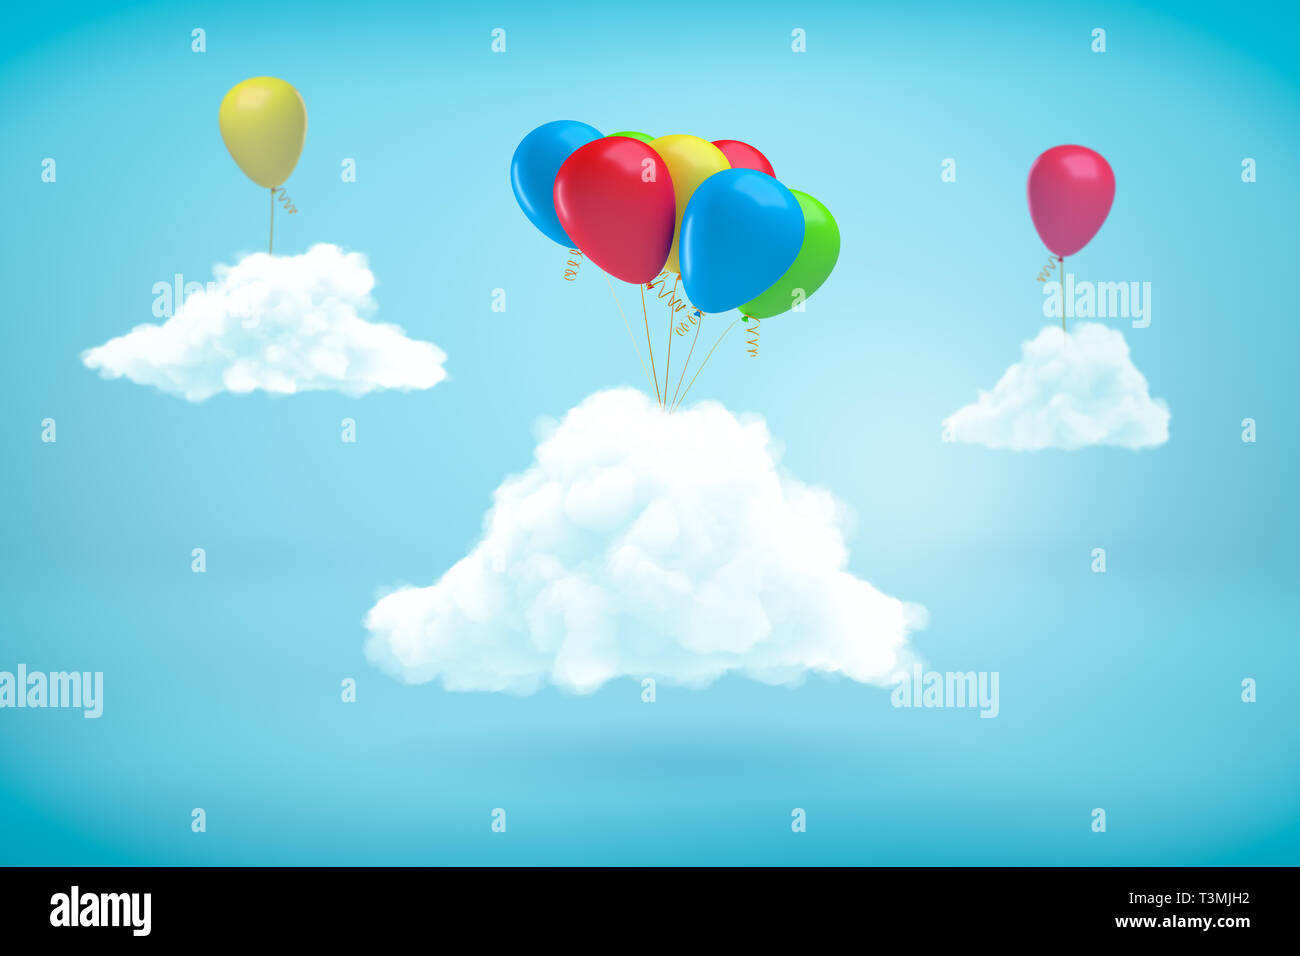 Le rendu 3d de trois des nuages dans le ciel bleu avec des ballons d'hélium attachés à eux. Banque D'Images